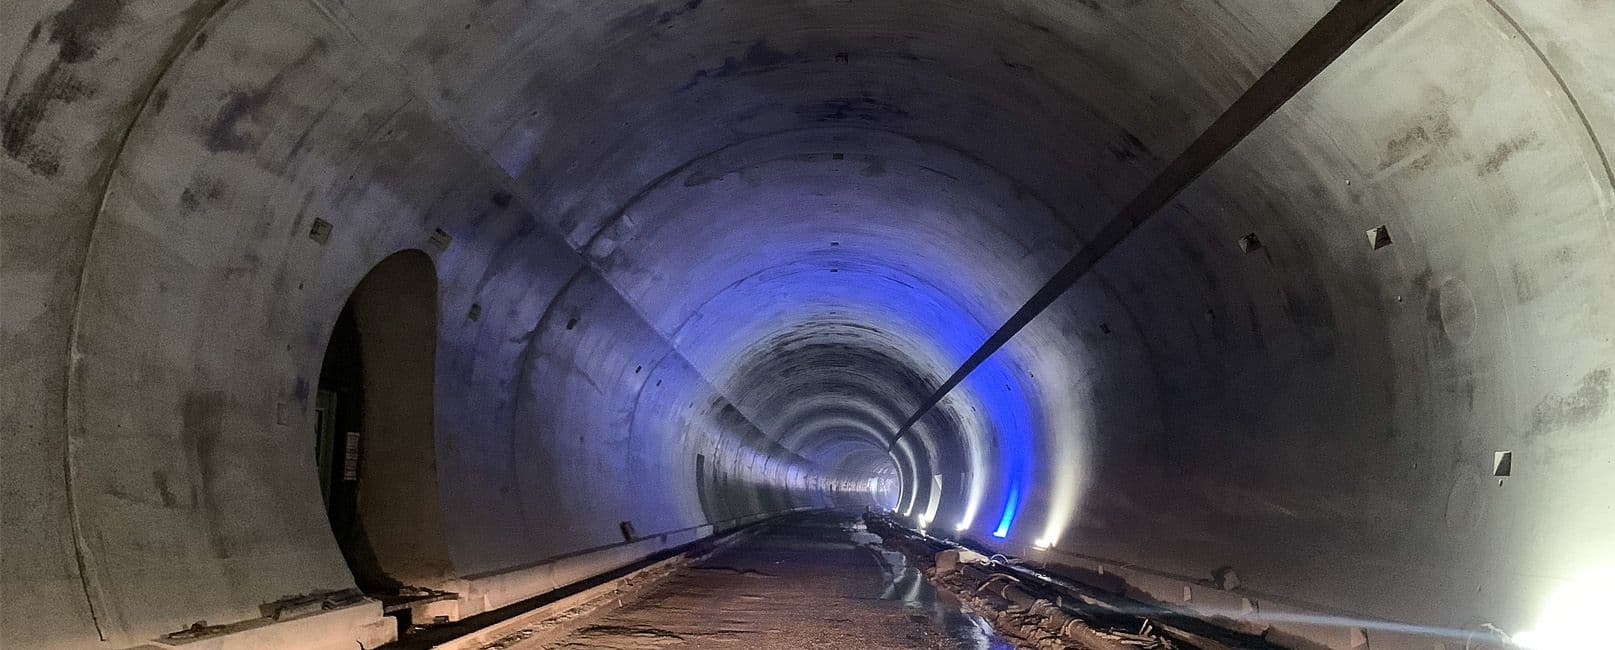 Karawankenautobahntunnel 